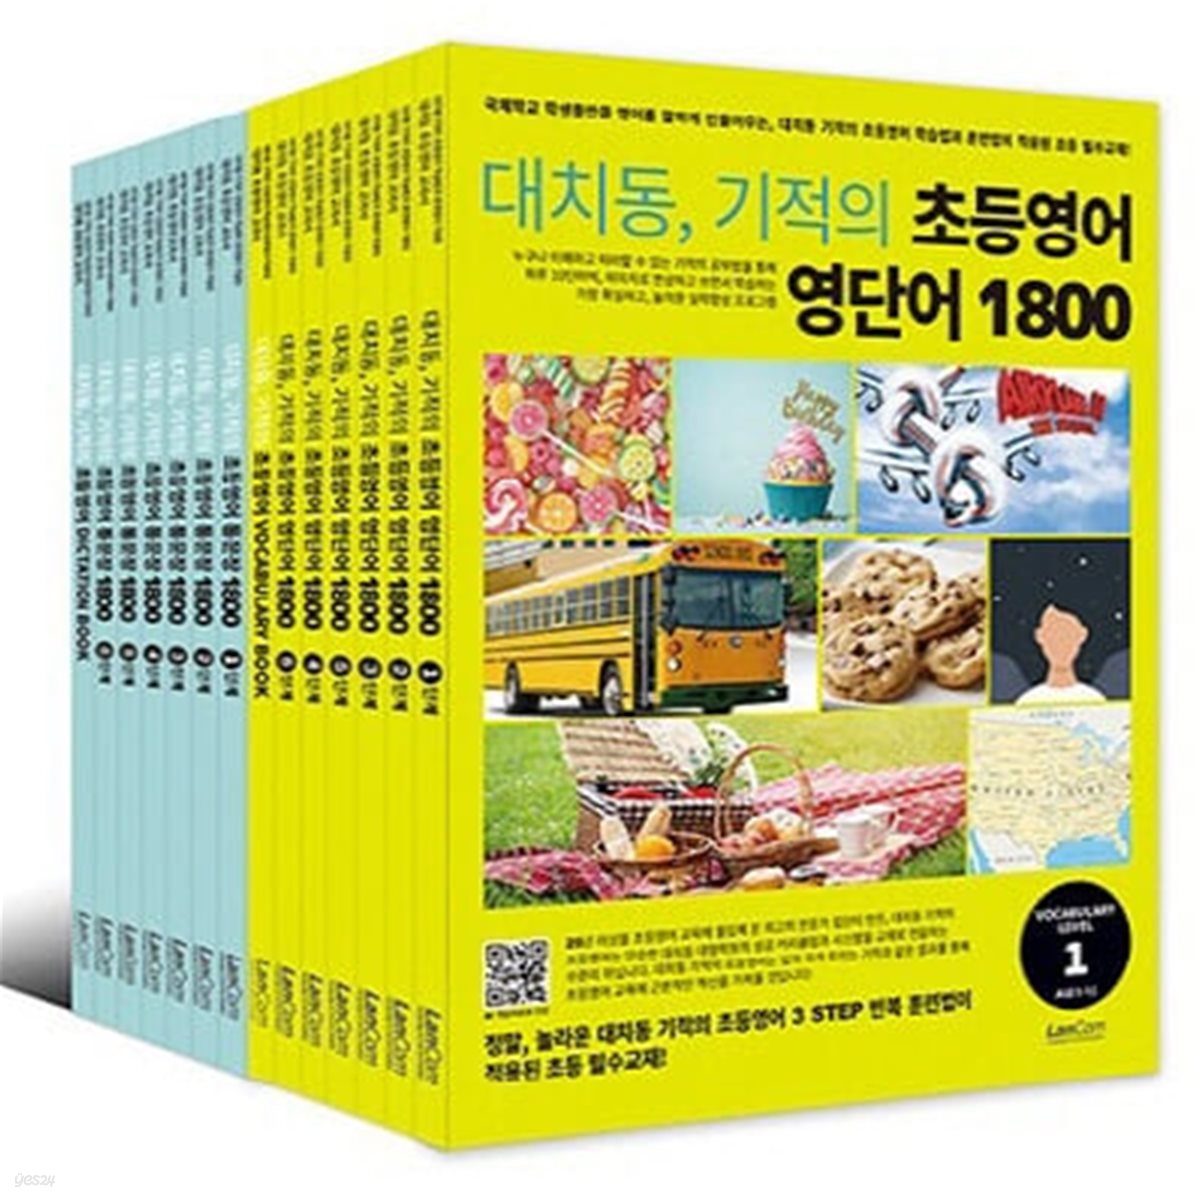 대치동 기적의 초등영어 영단어+통문장 1800 시리즈 세트 (전12권+부록)